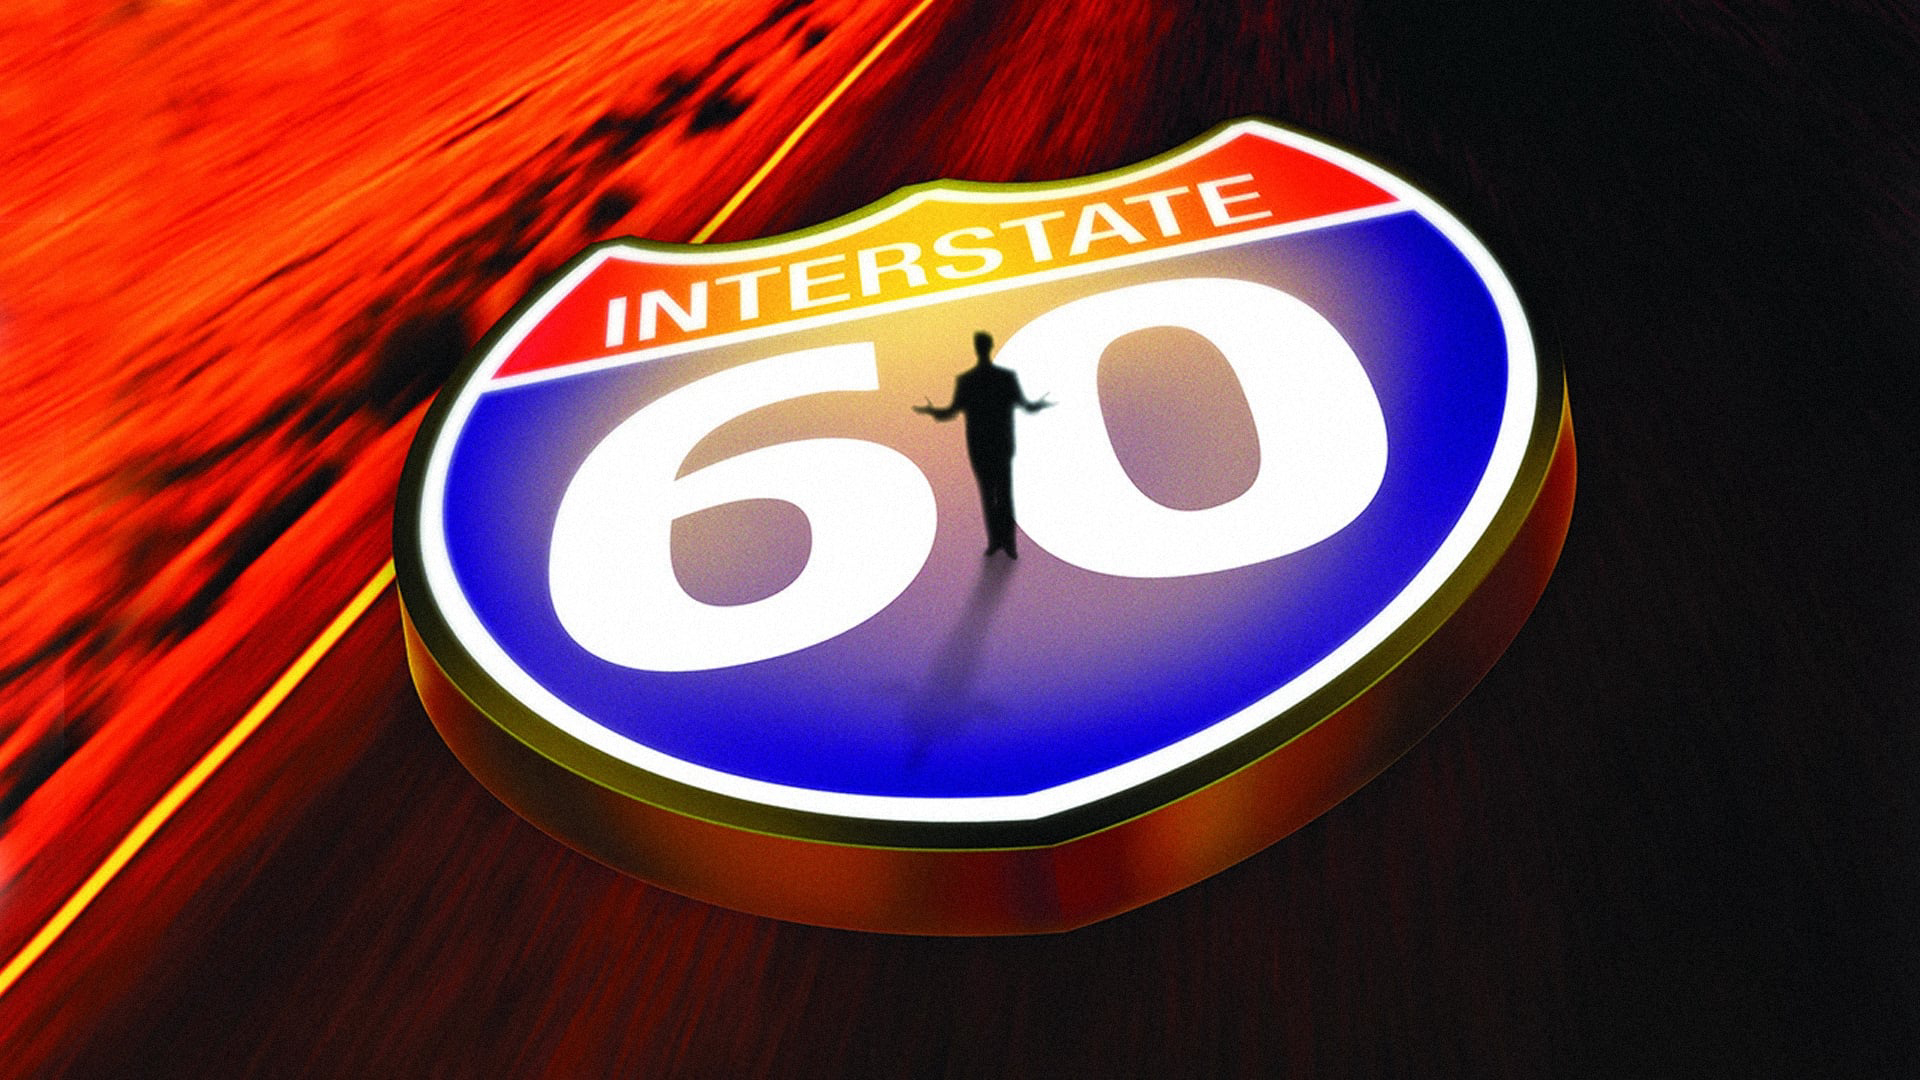 Interstate 60 / Interstate 60 (2002)